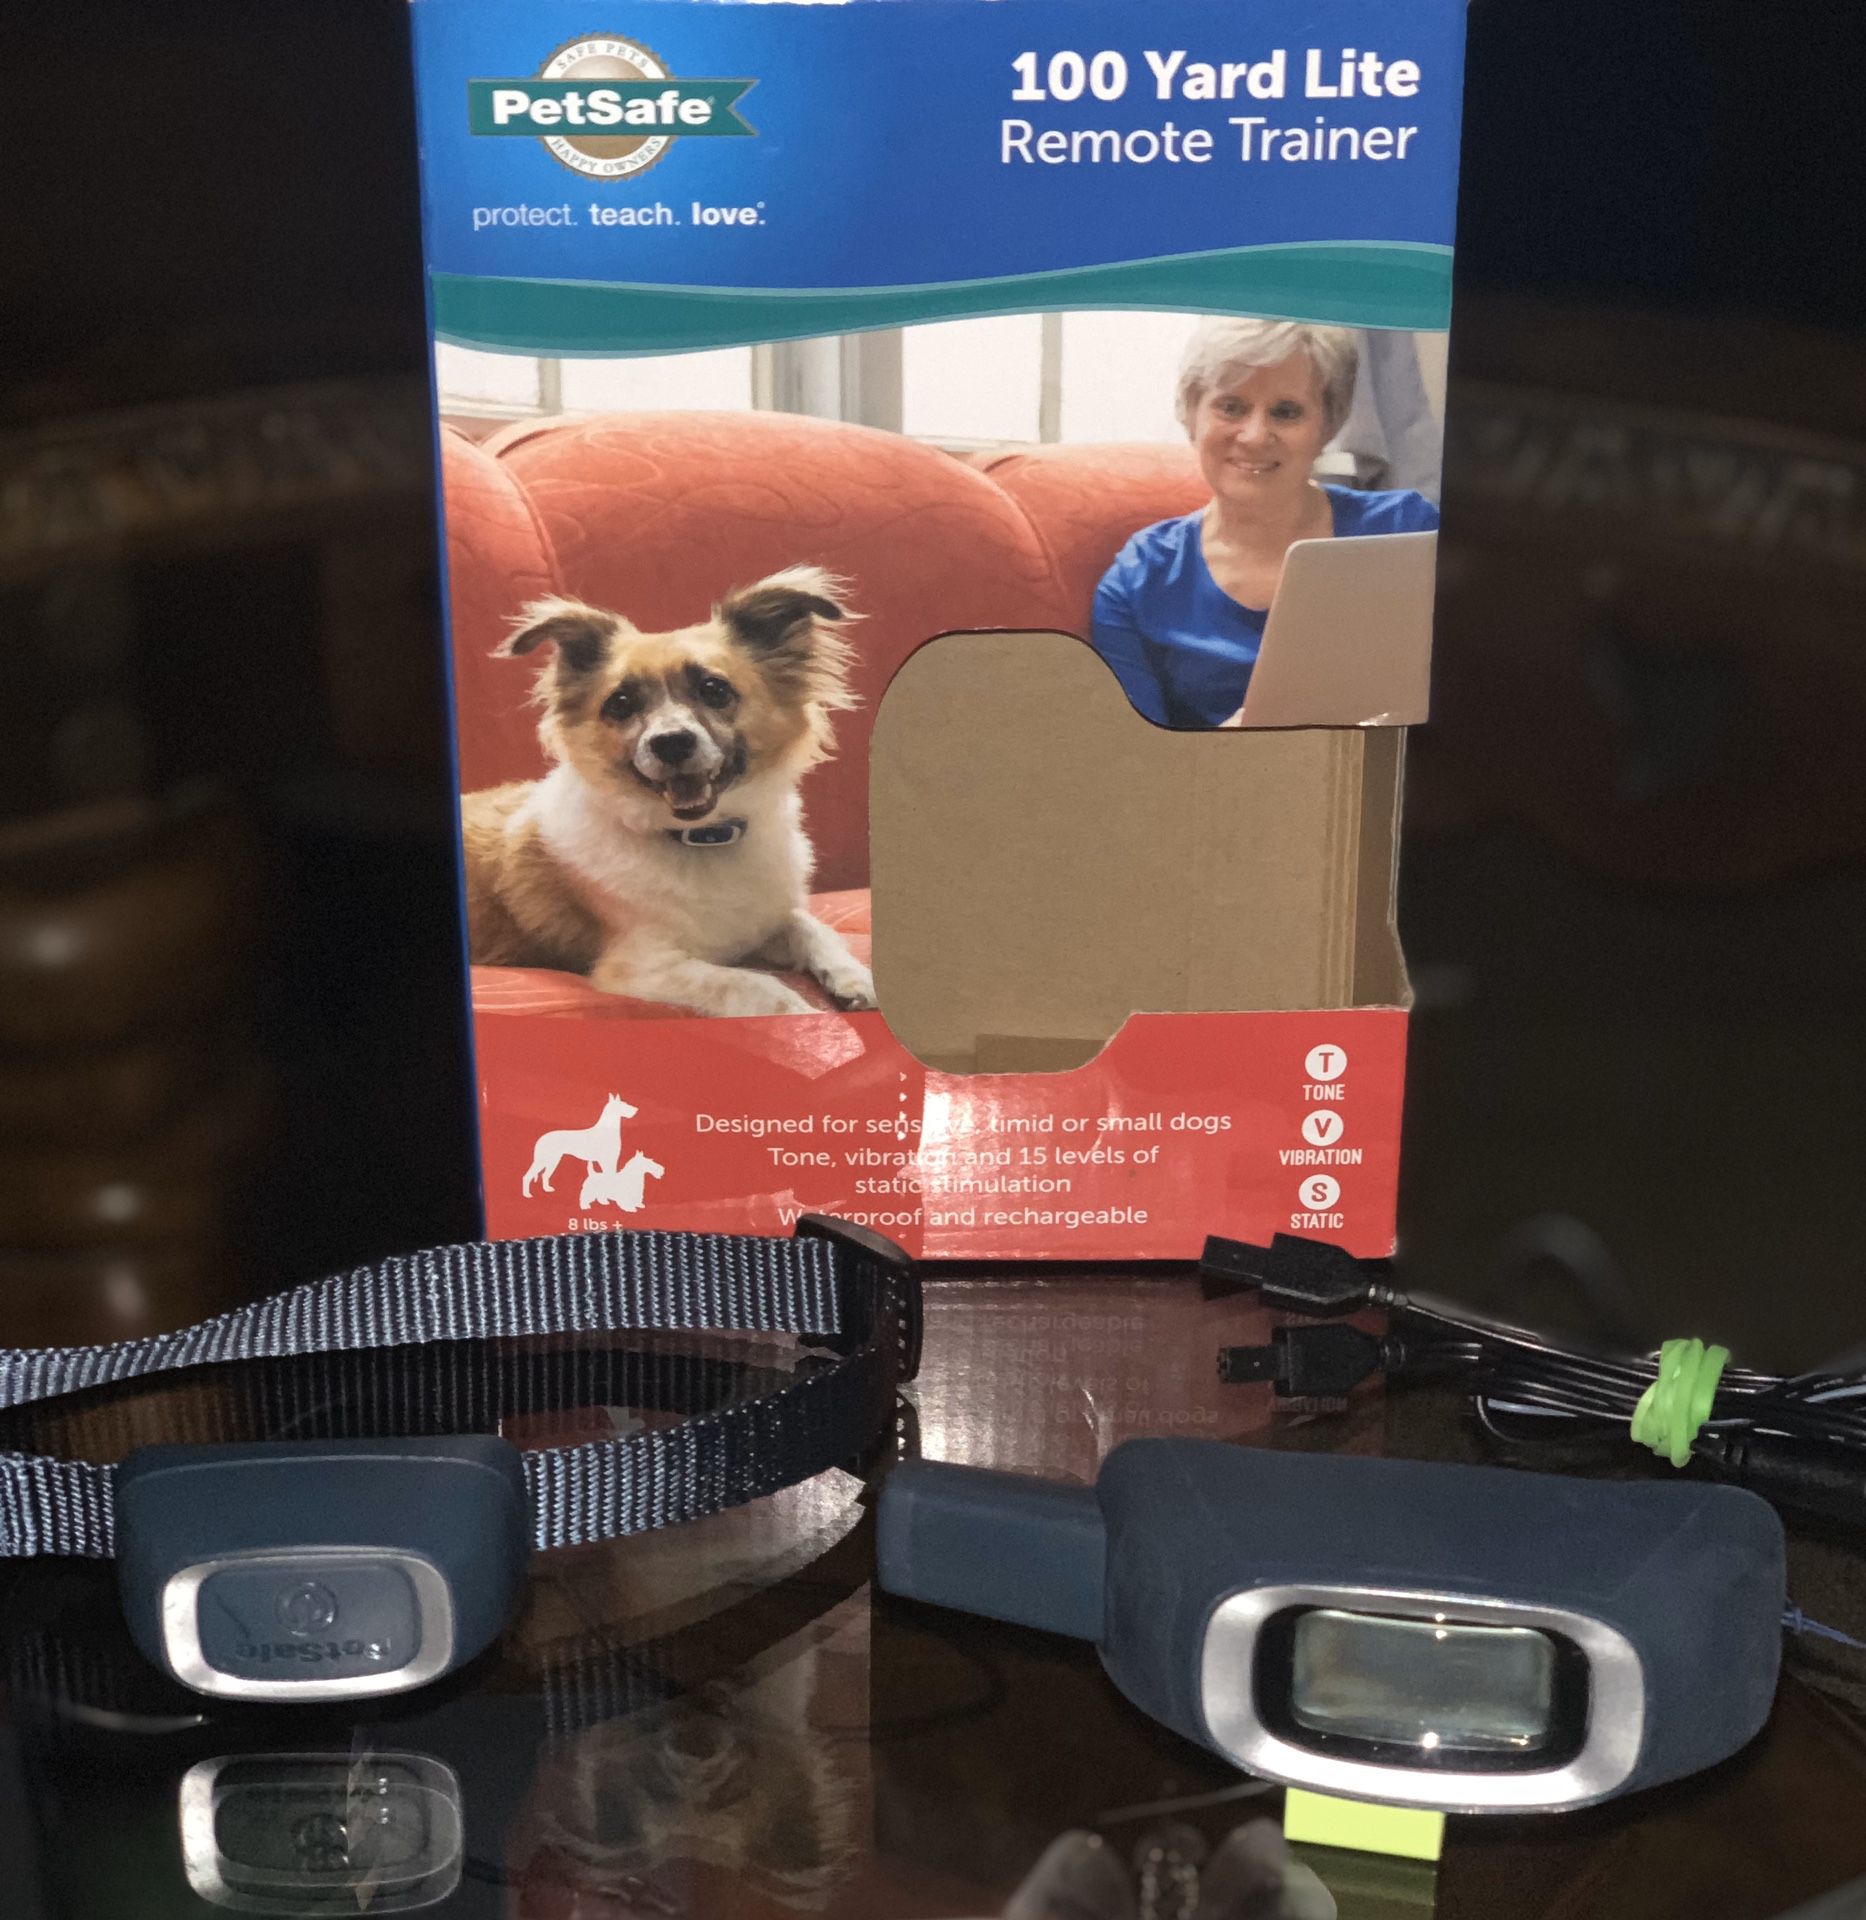 Petsafe 100 Yard Remote Dog Trainer